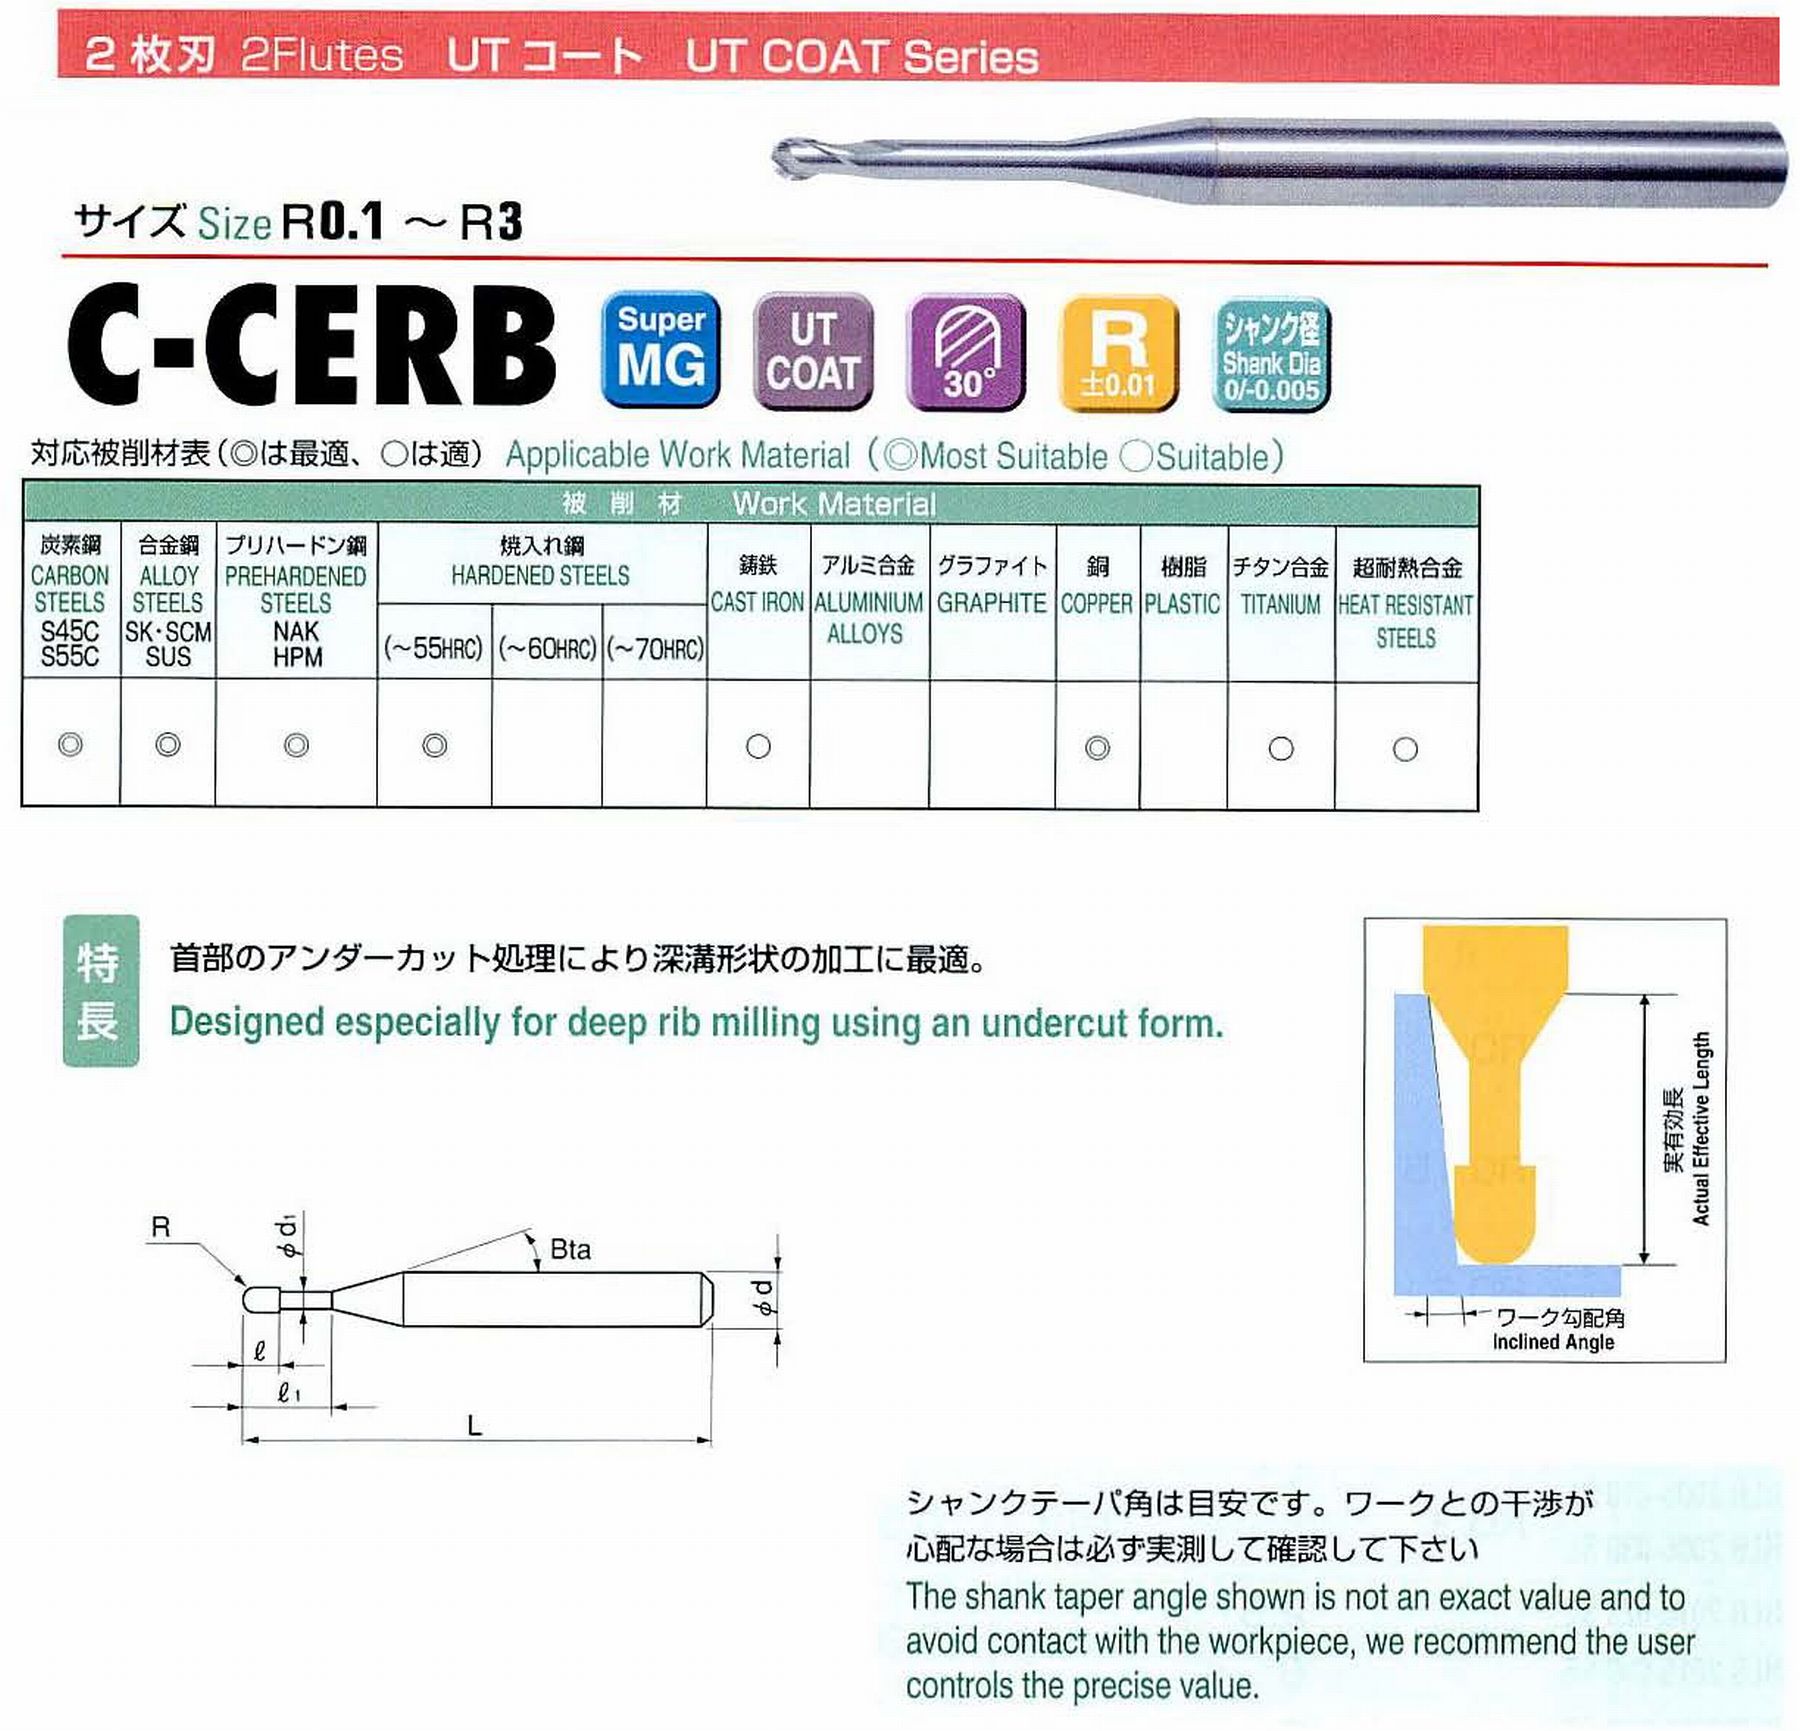 ユニオンツール 2枚刃 C-CERB2020-20 ボール半径R1 有効長20 刃長1.6 首径1.94 シャンクテーパ角11° 全長55 シャンク径4